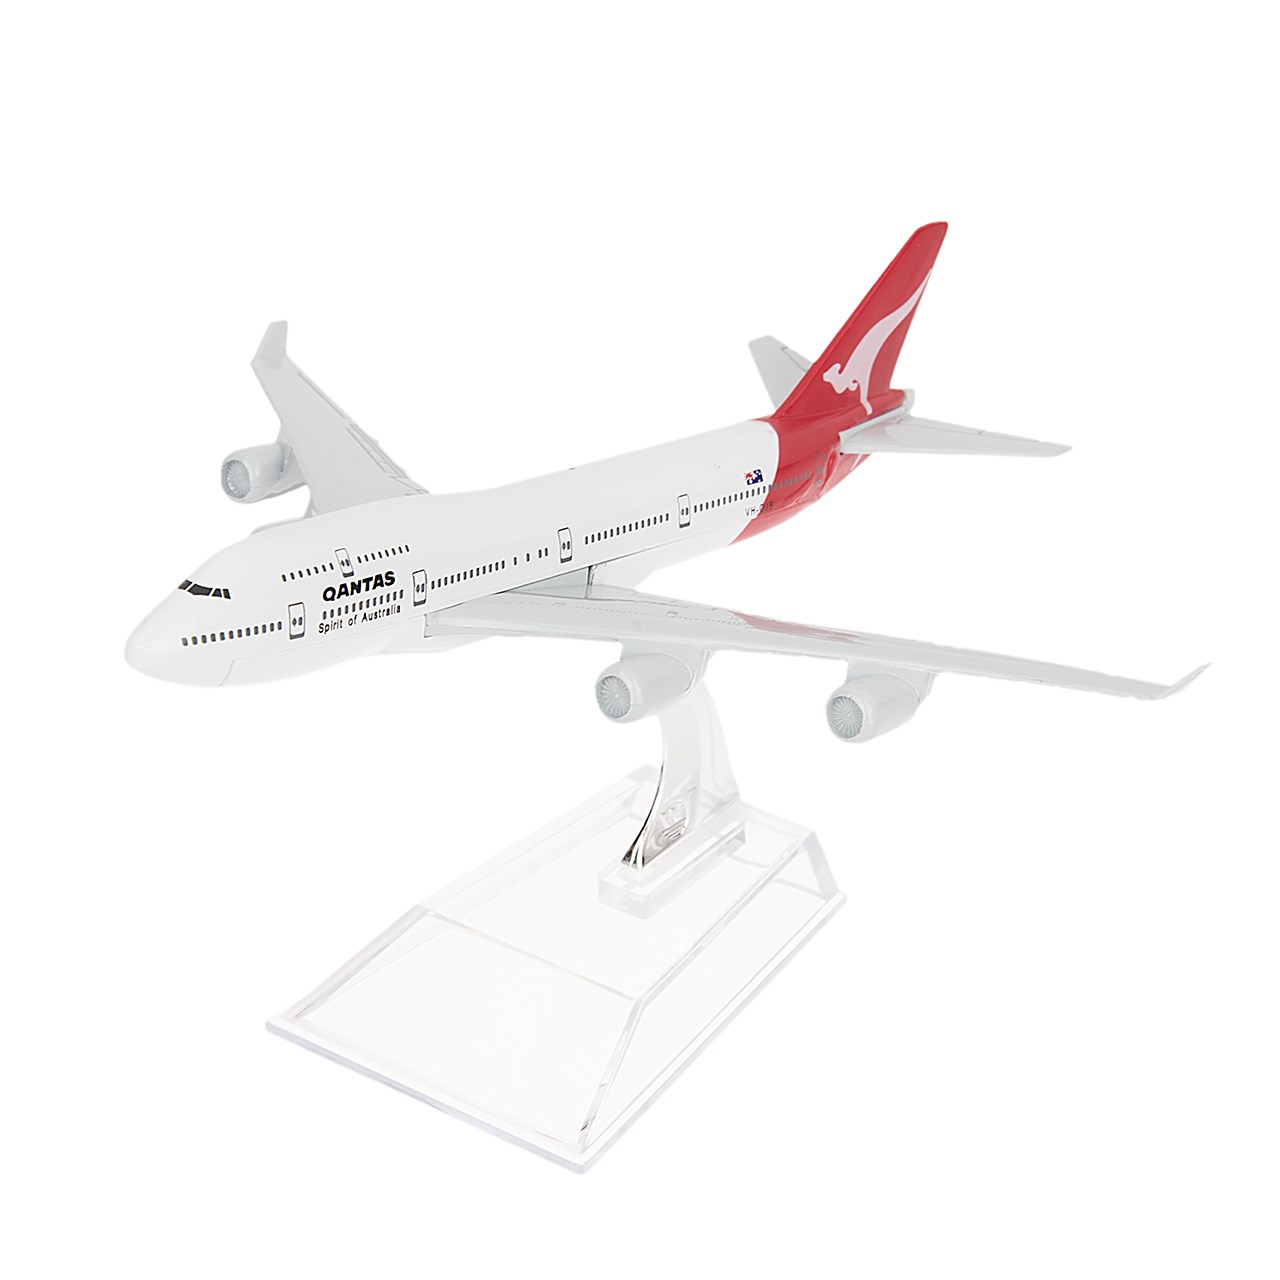 هواپیما مدل Qantas VH-OJB